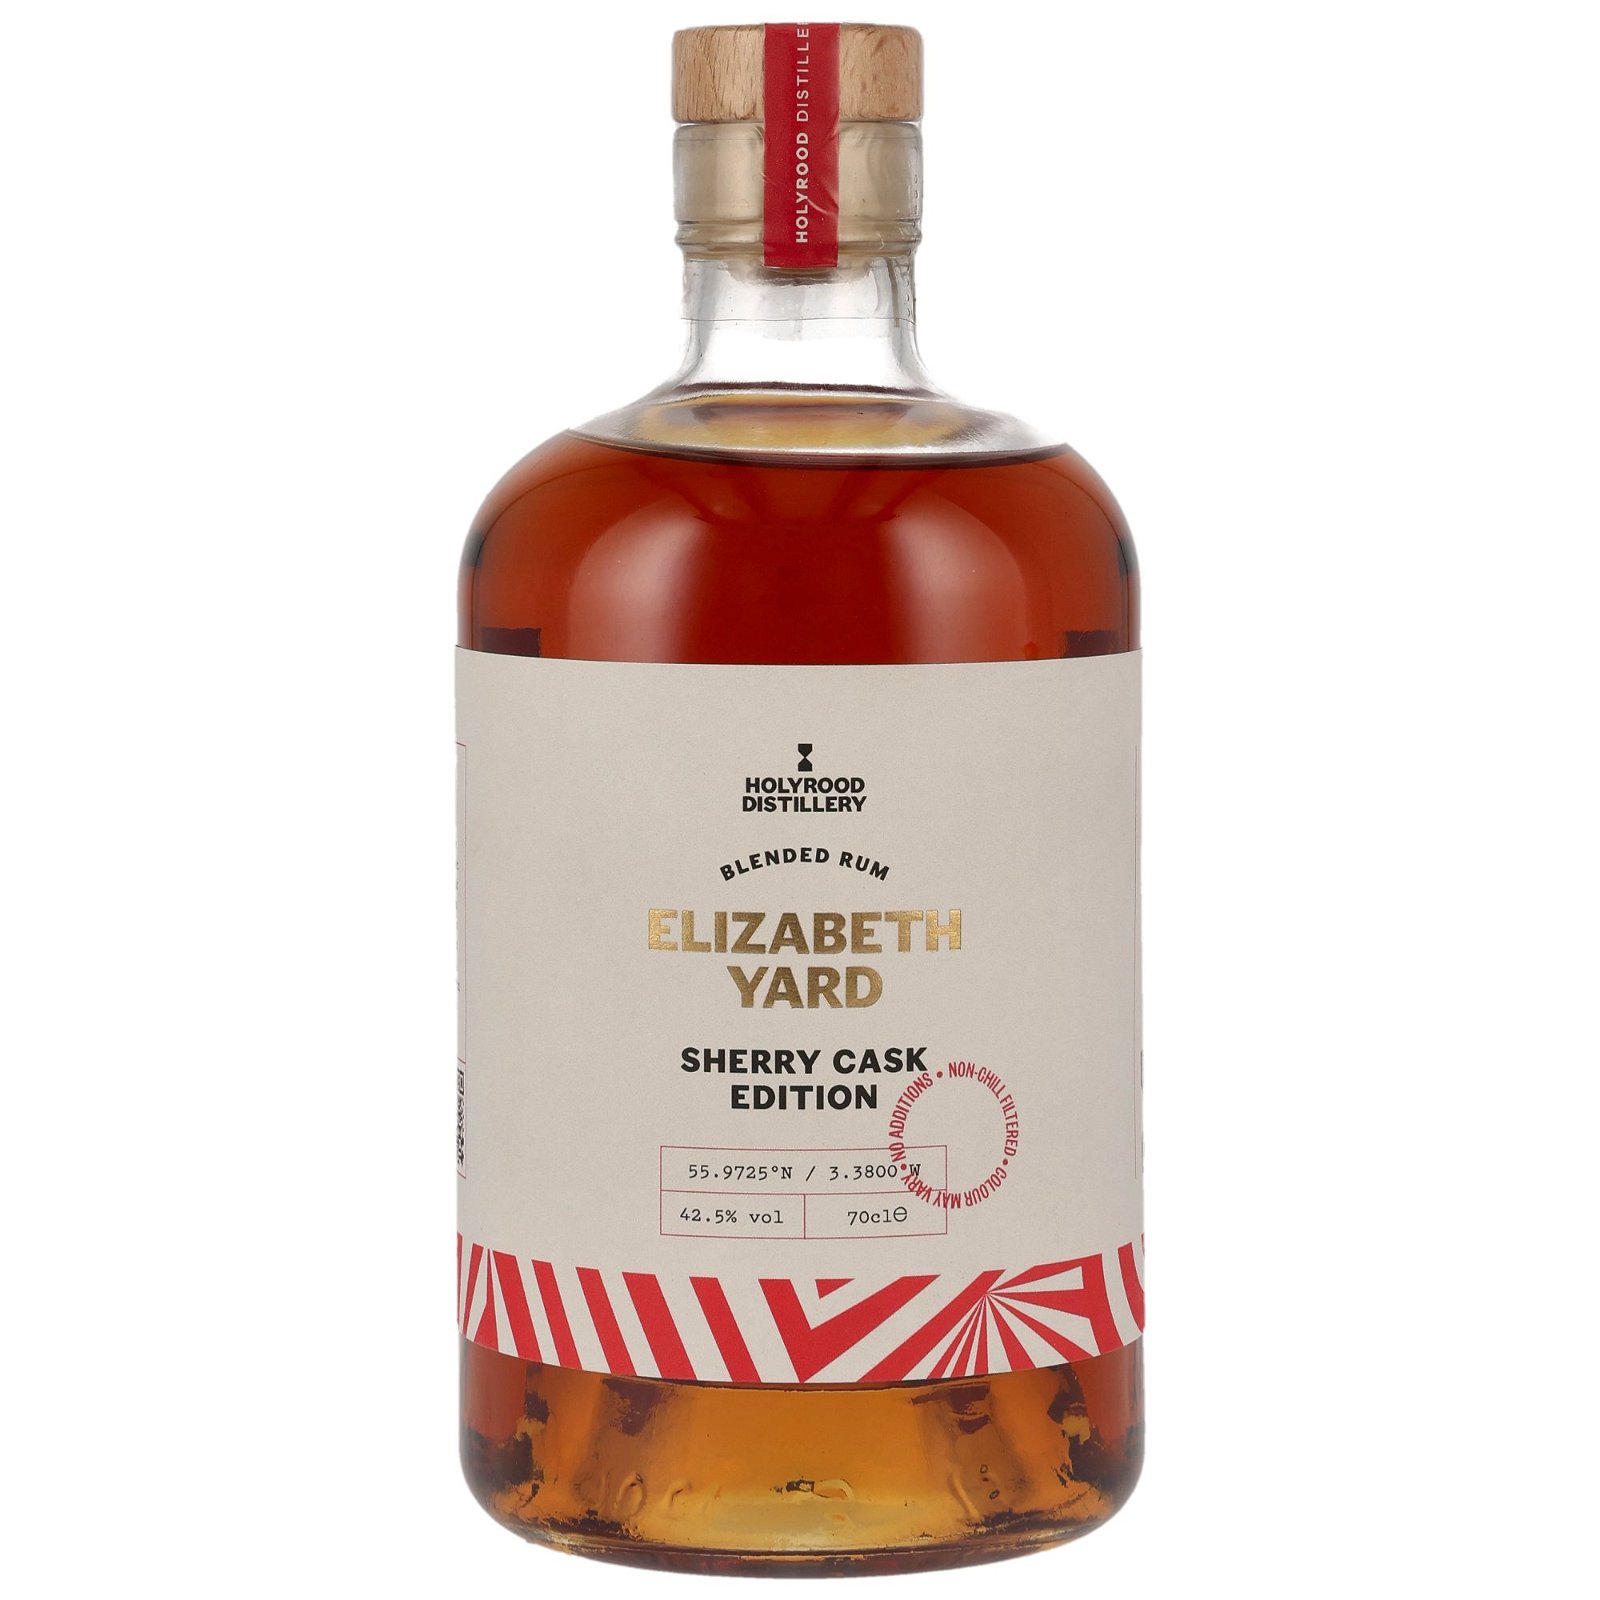 Holyrood Blended Rum Sherry Cask Edition (Elizabeth Yard)